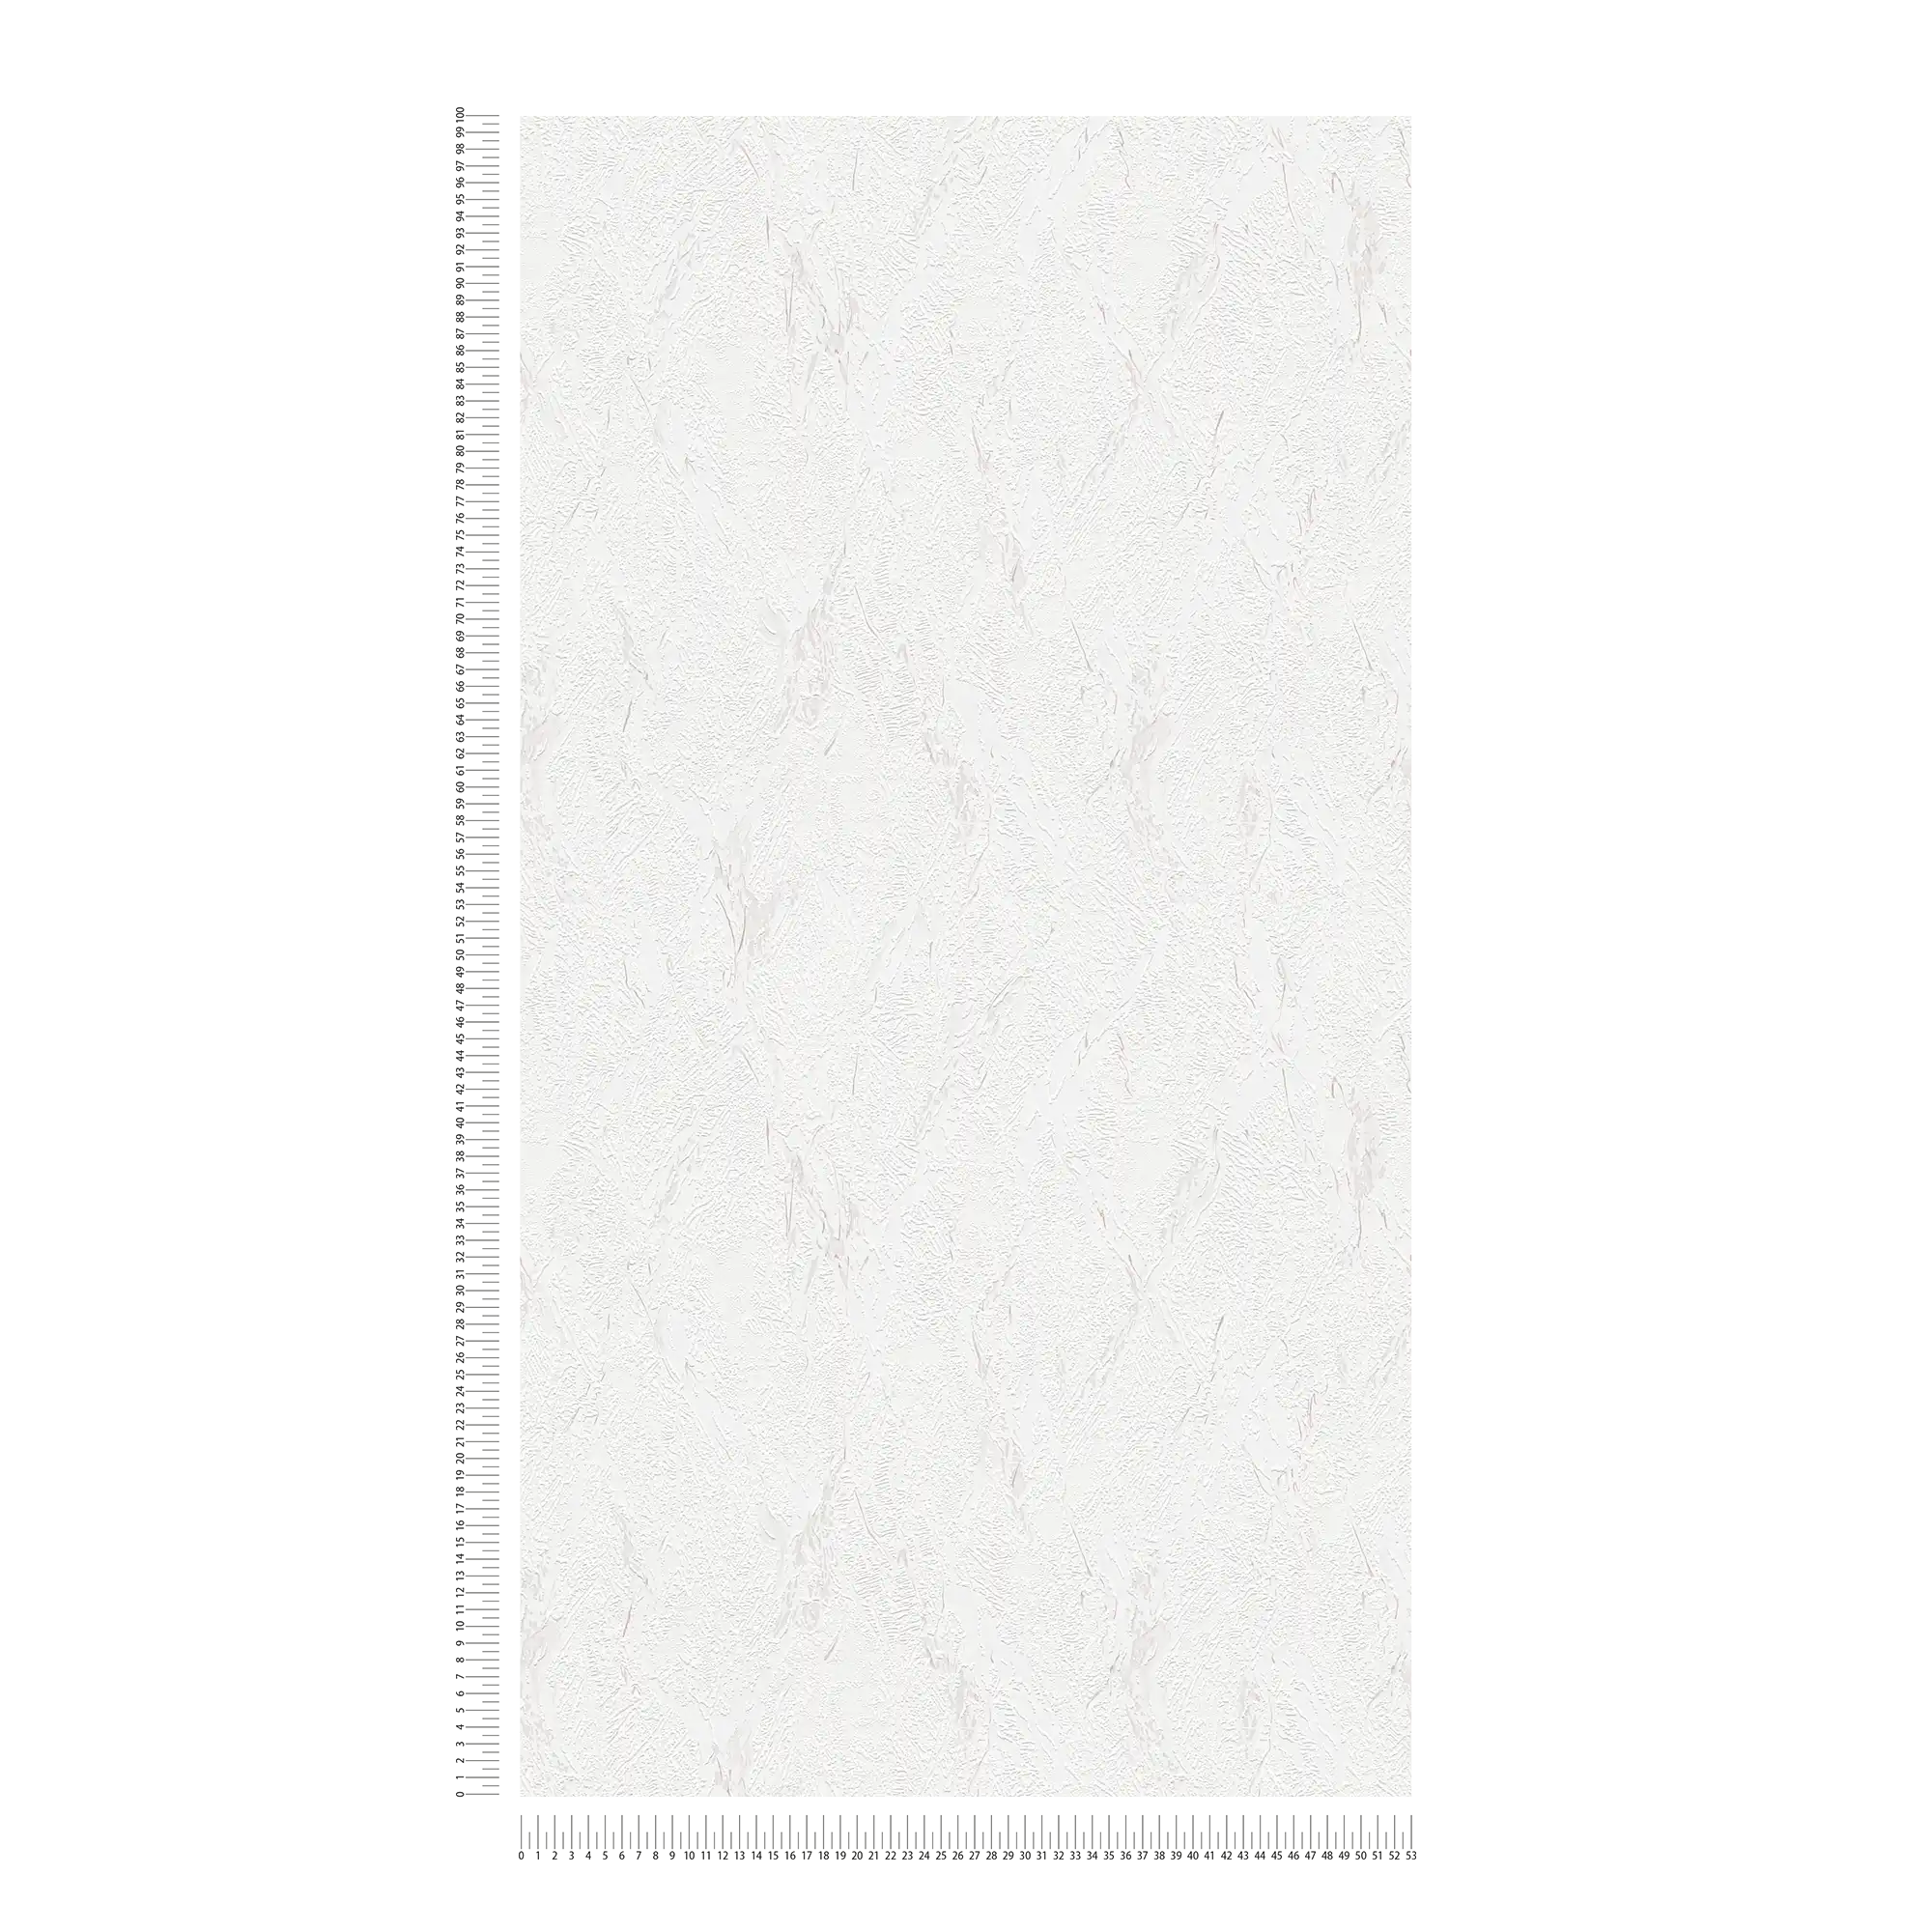             Carta da parati strutturata in tessuto non tessuto con effetto intonaco - marrone, bianco
        